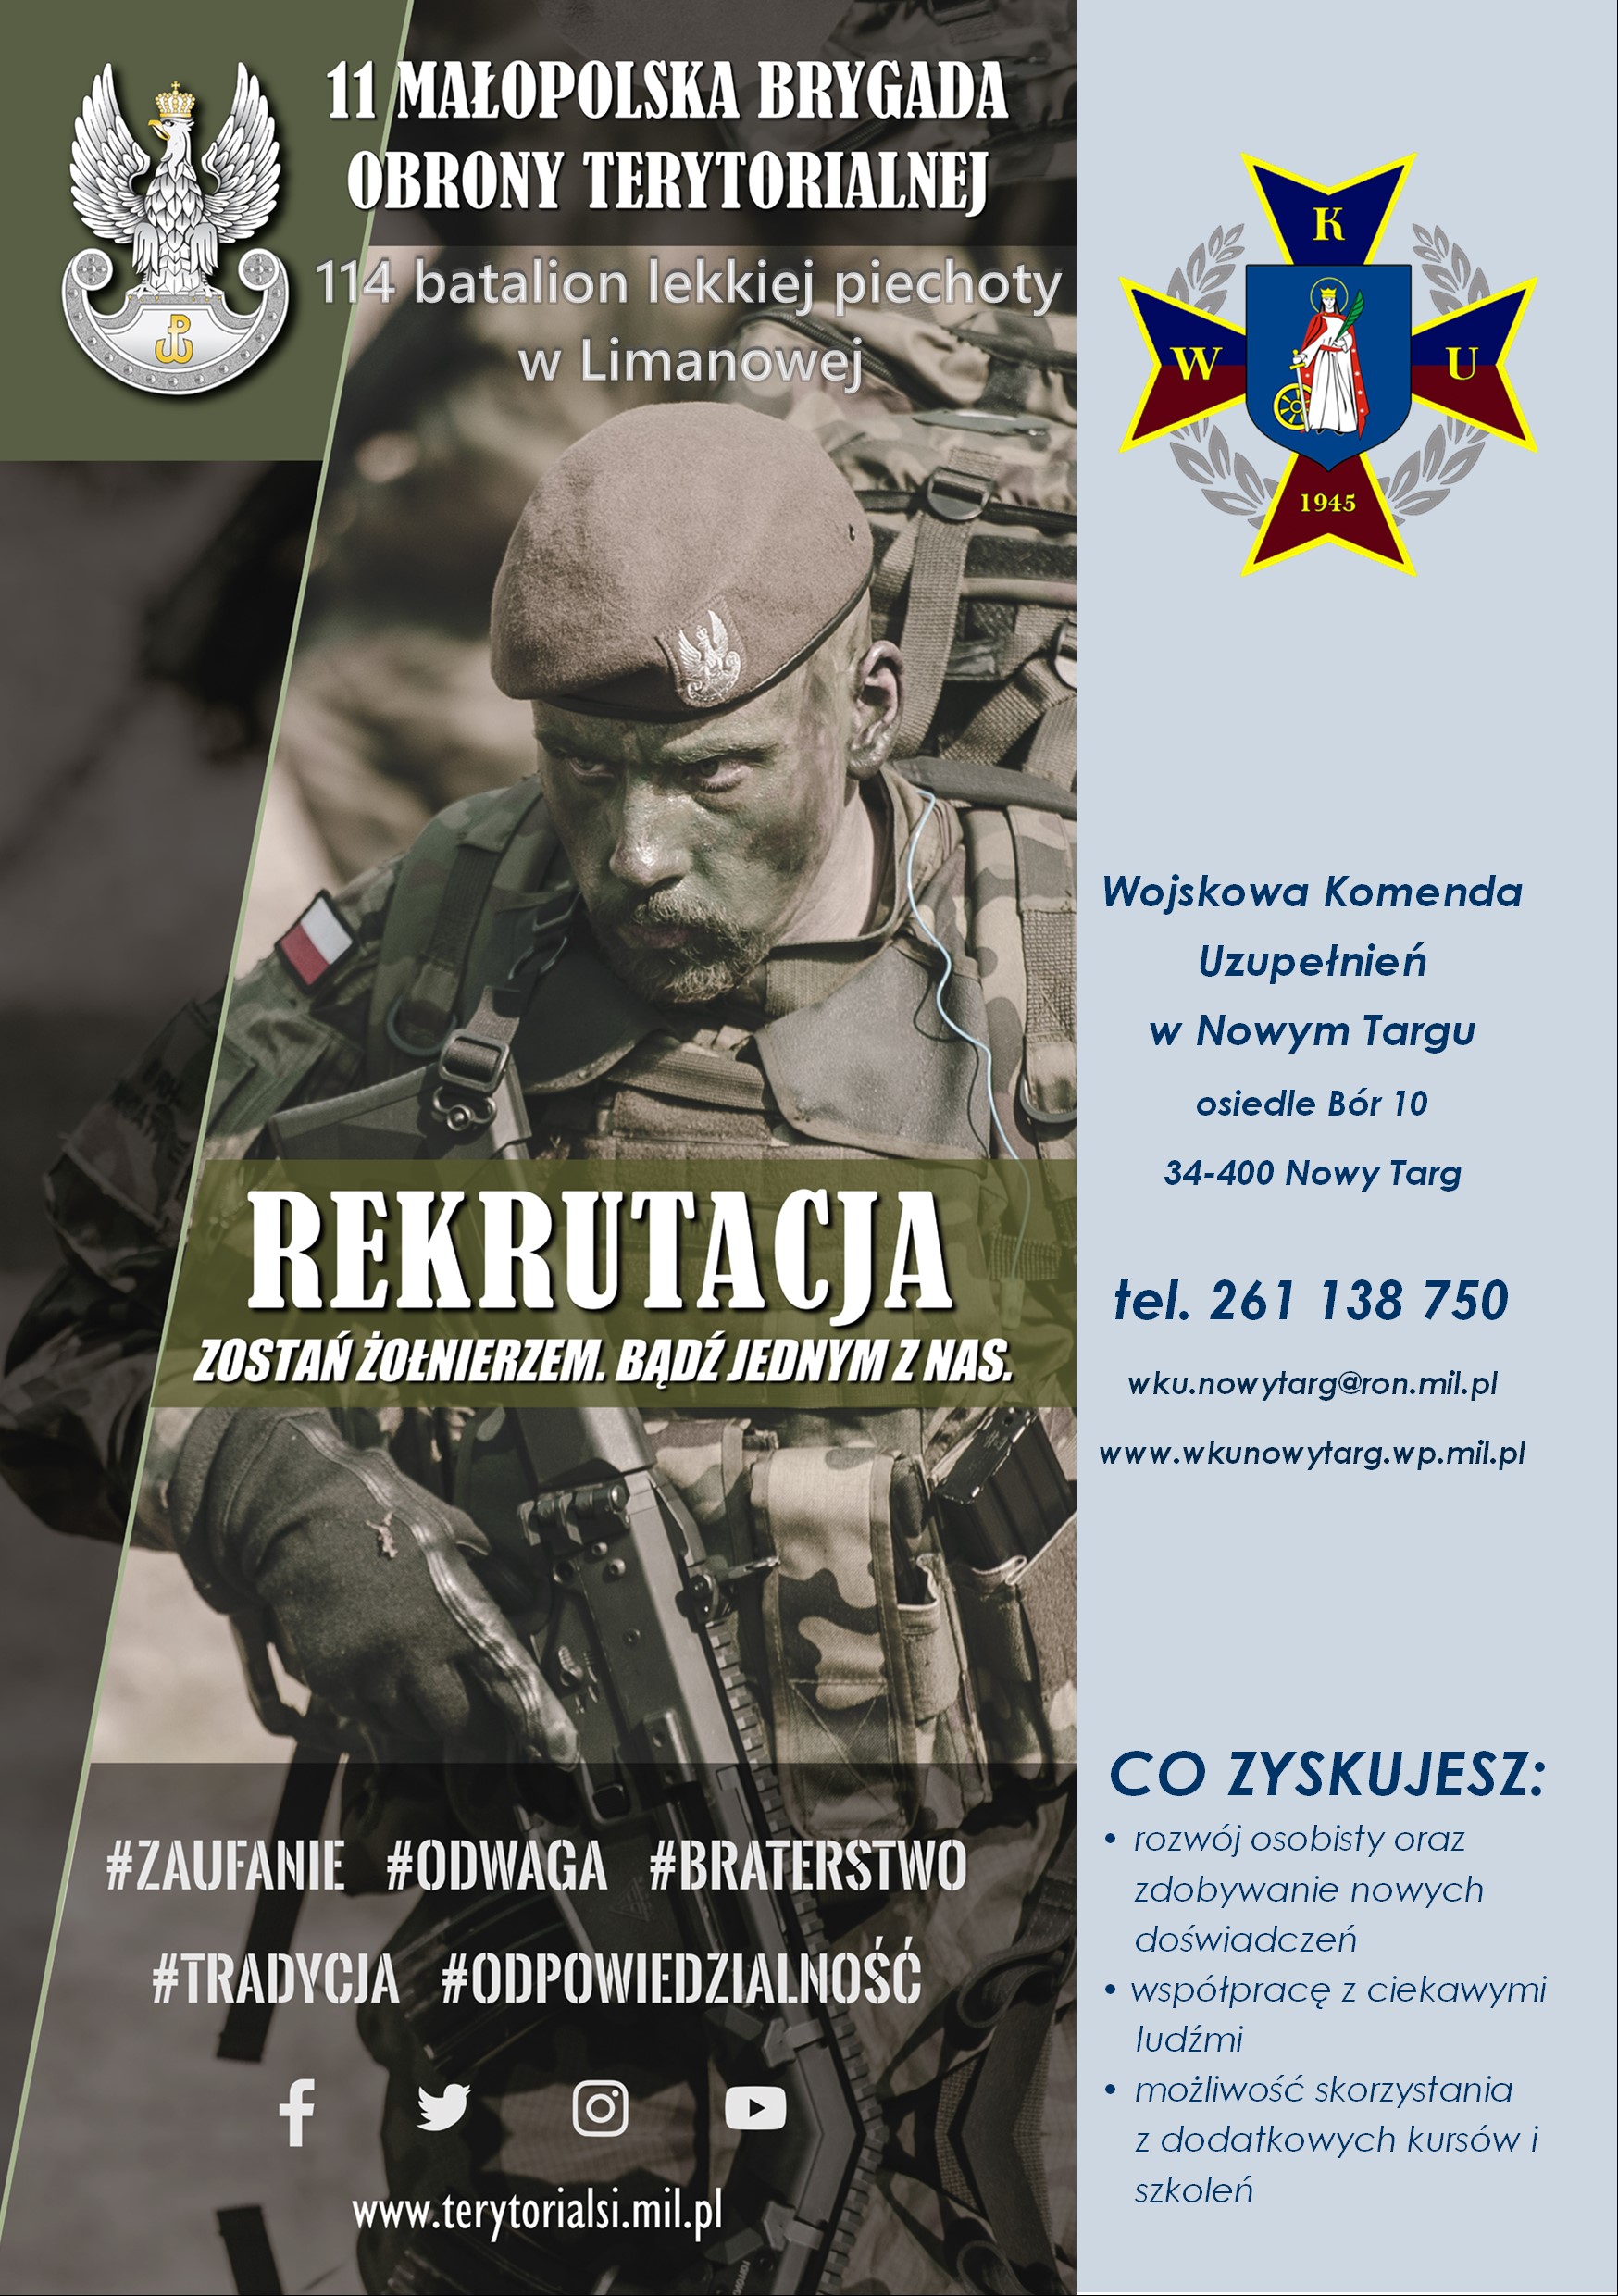 WKU w Nowym Targu informuje o rekrutacji do formowanego 114 batalionu lekkiej piechoty w Limanowej